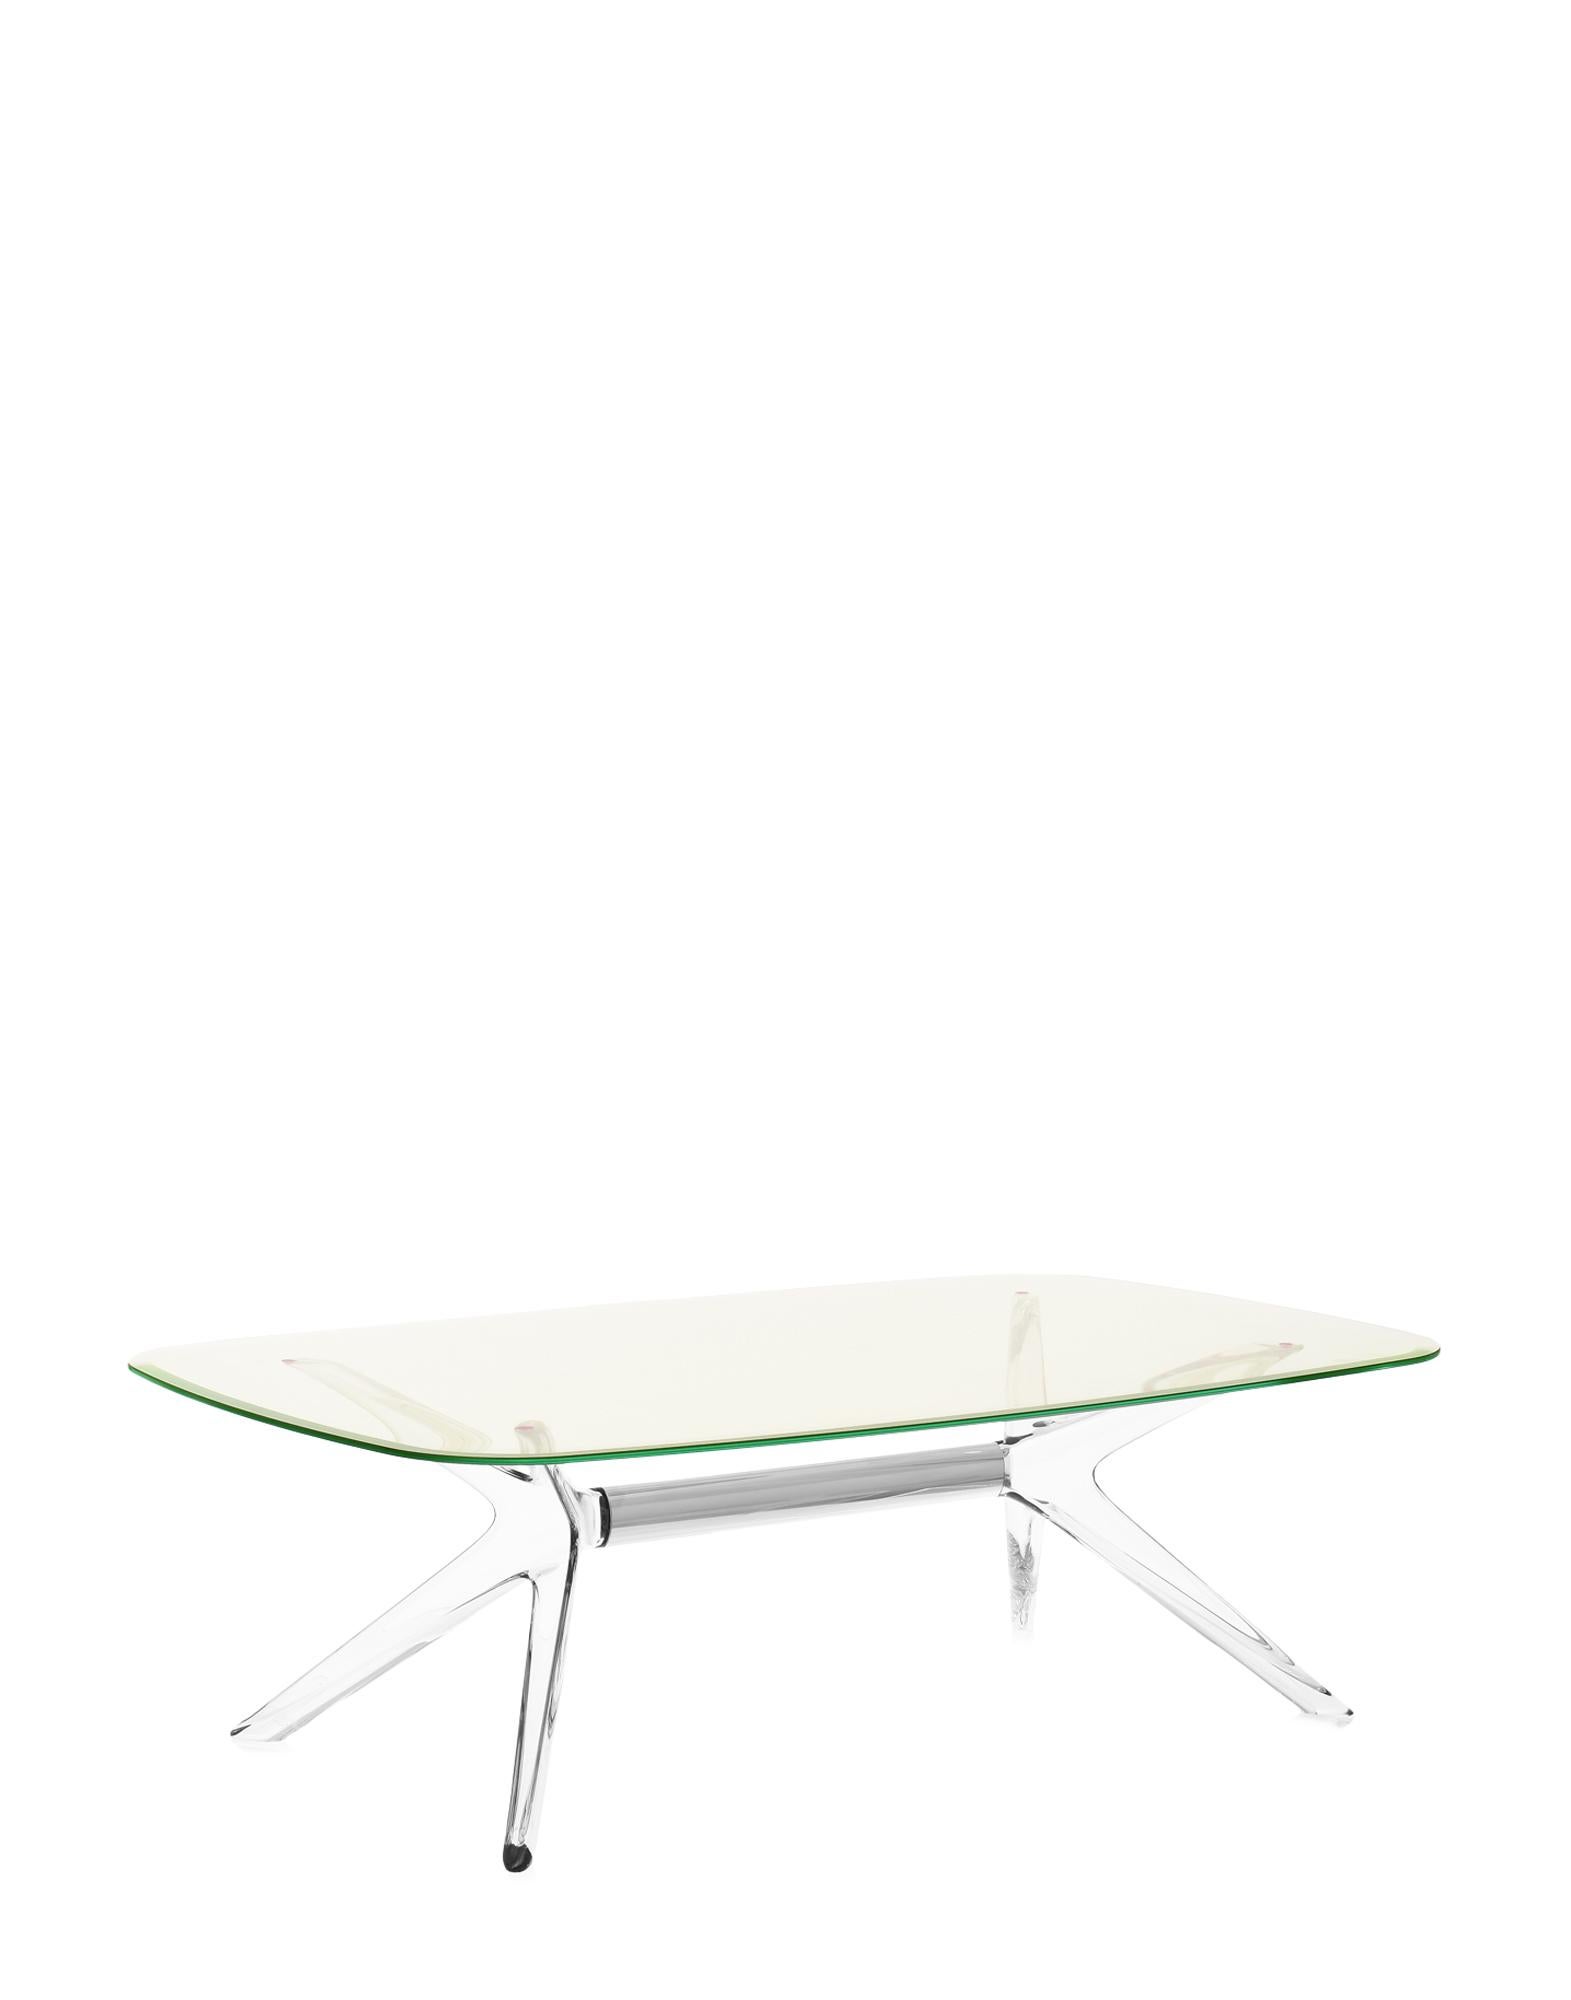 Kartell lifestyle enrichit le salon avec Blast de Philippe Starck, une table basse rectangulaire aux angles arrondis et aux bases et plateaux transparents. Le design est une évolution de la table Sir Gio. Le noyau central de la base est